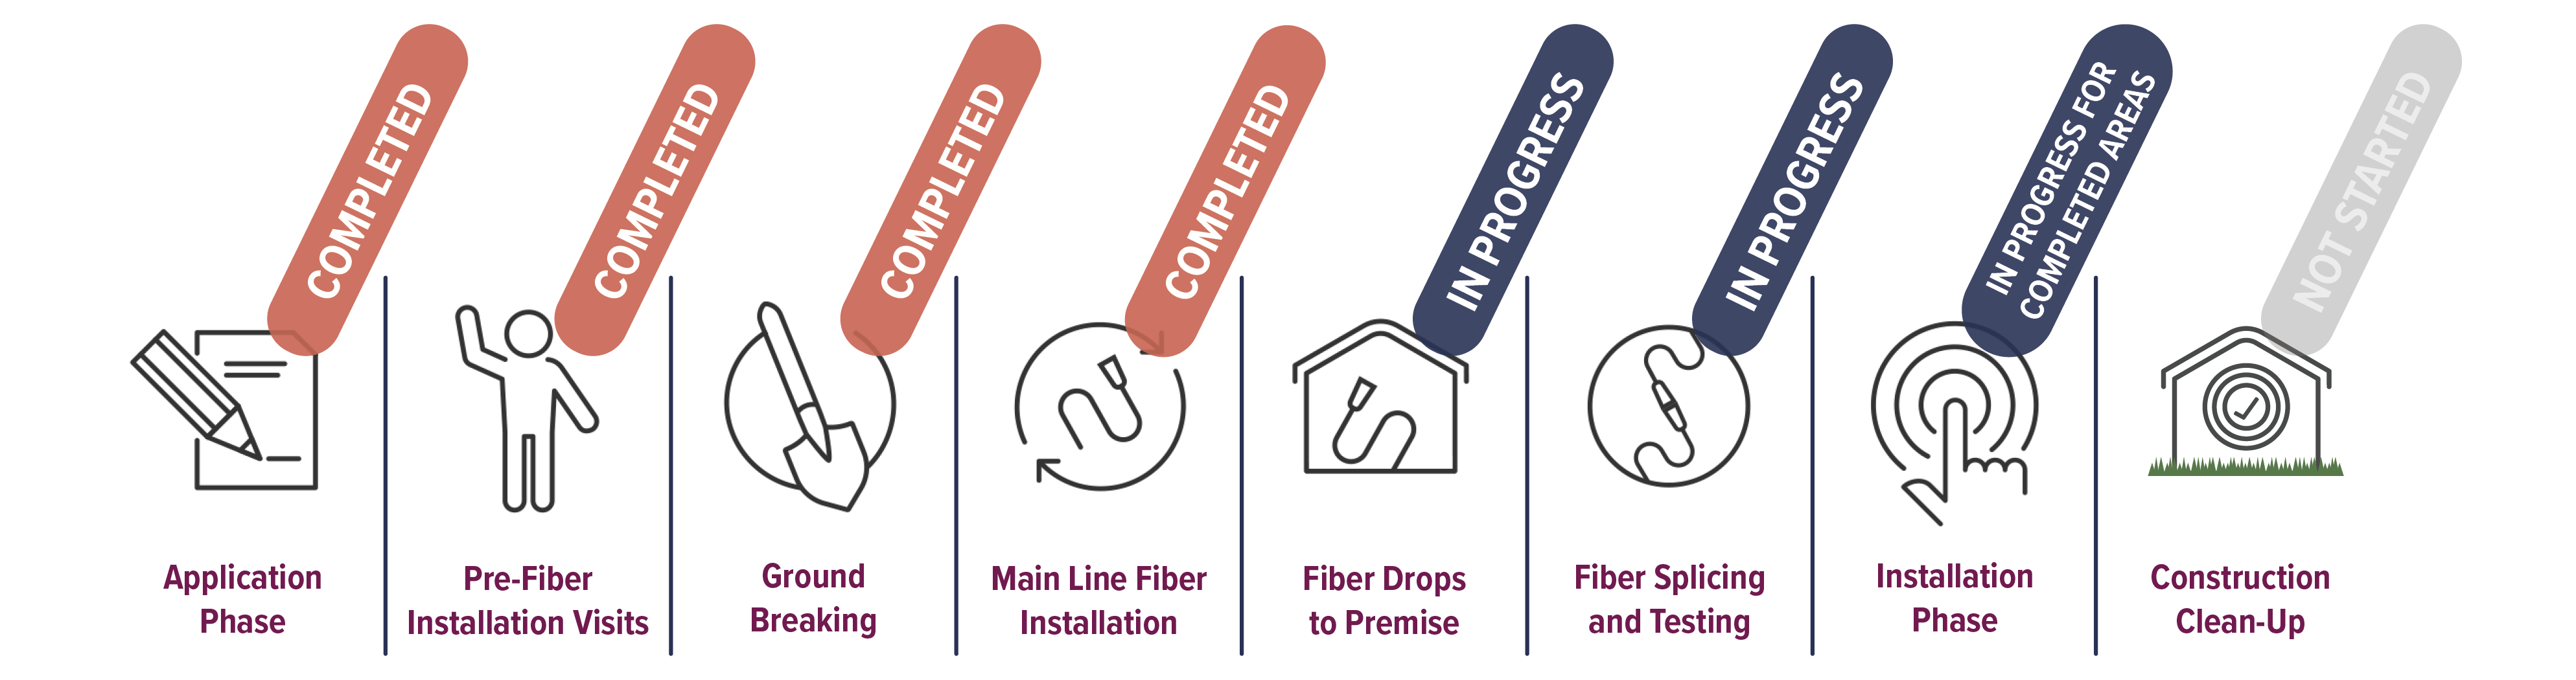 fiber internet provider